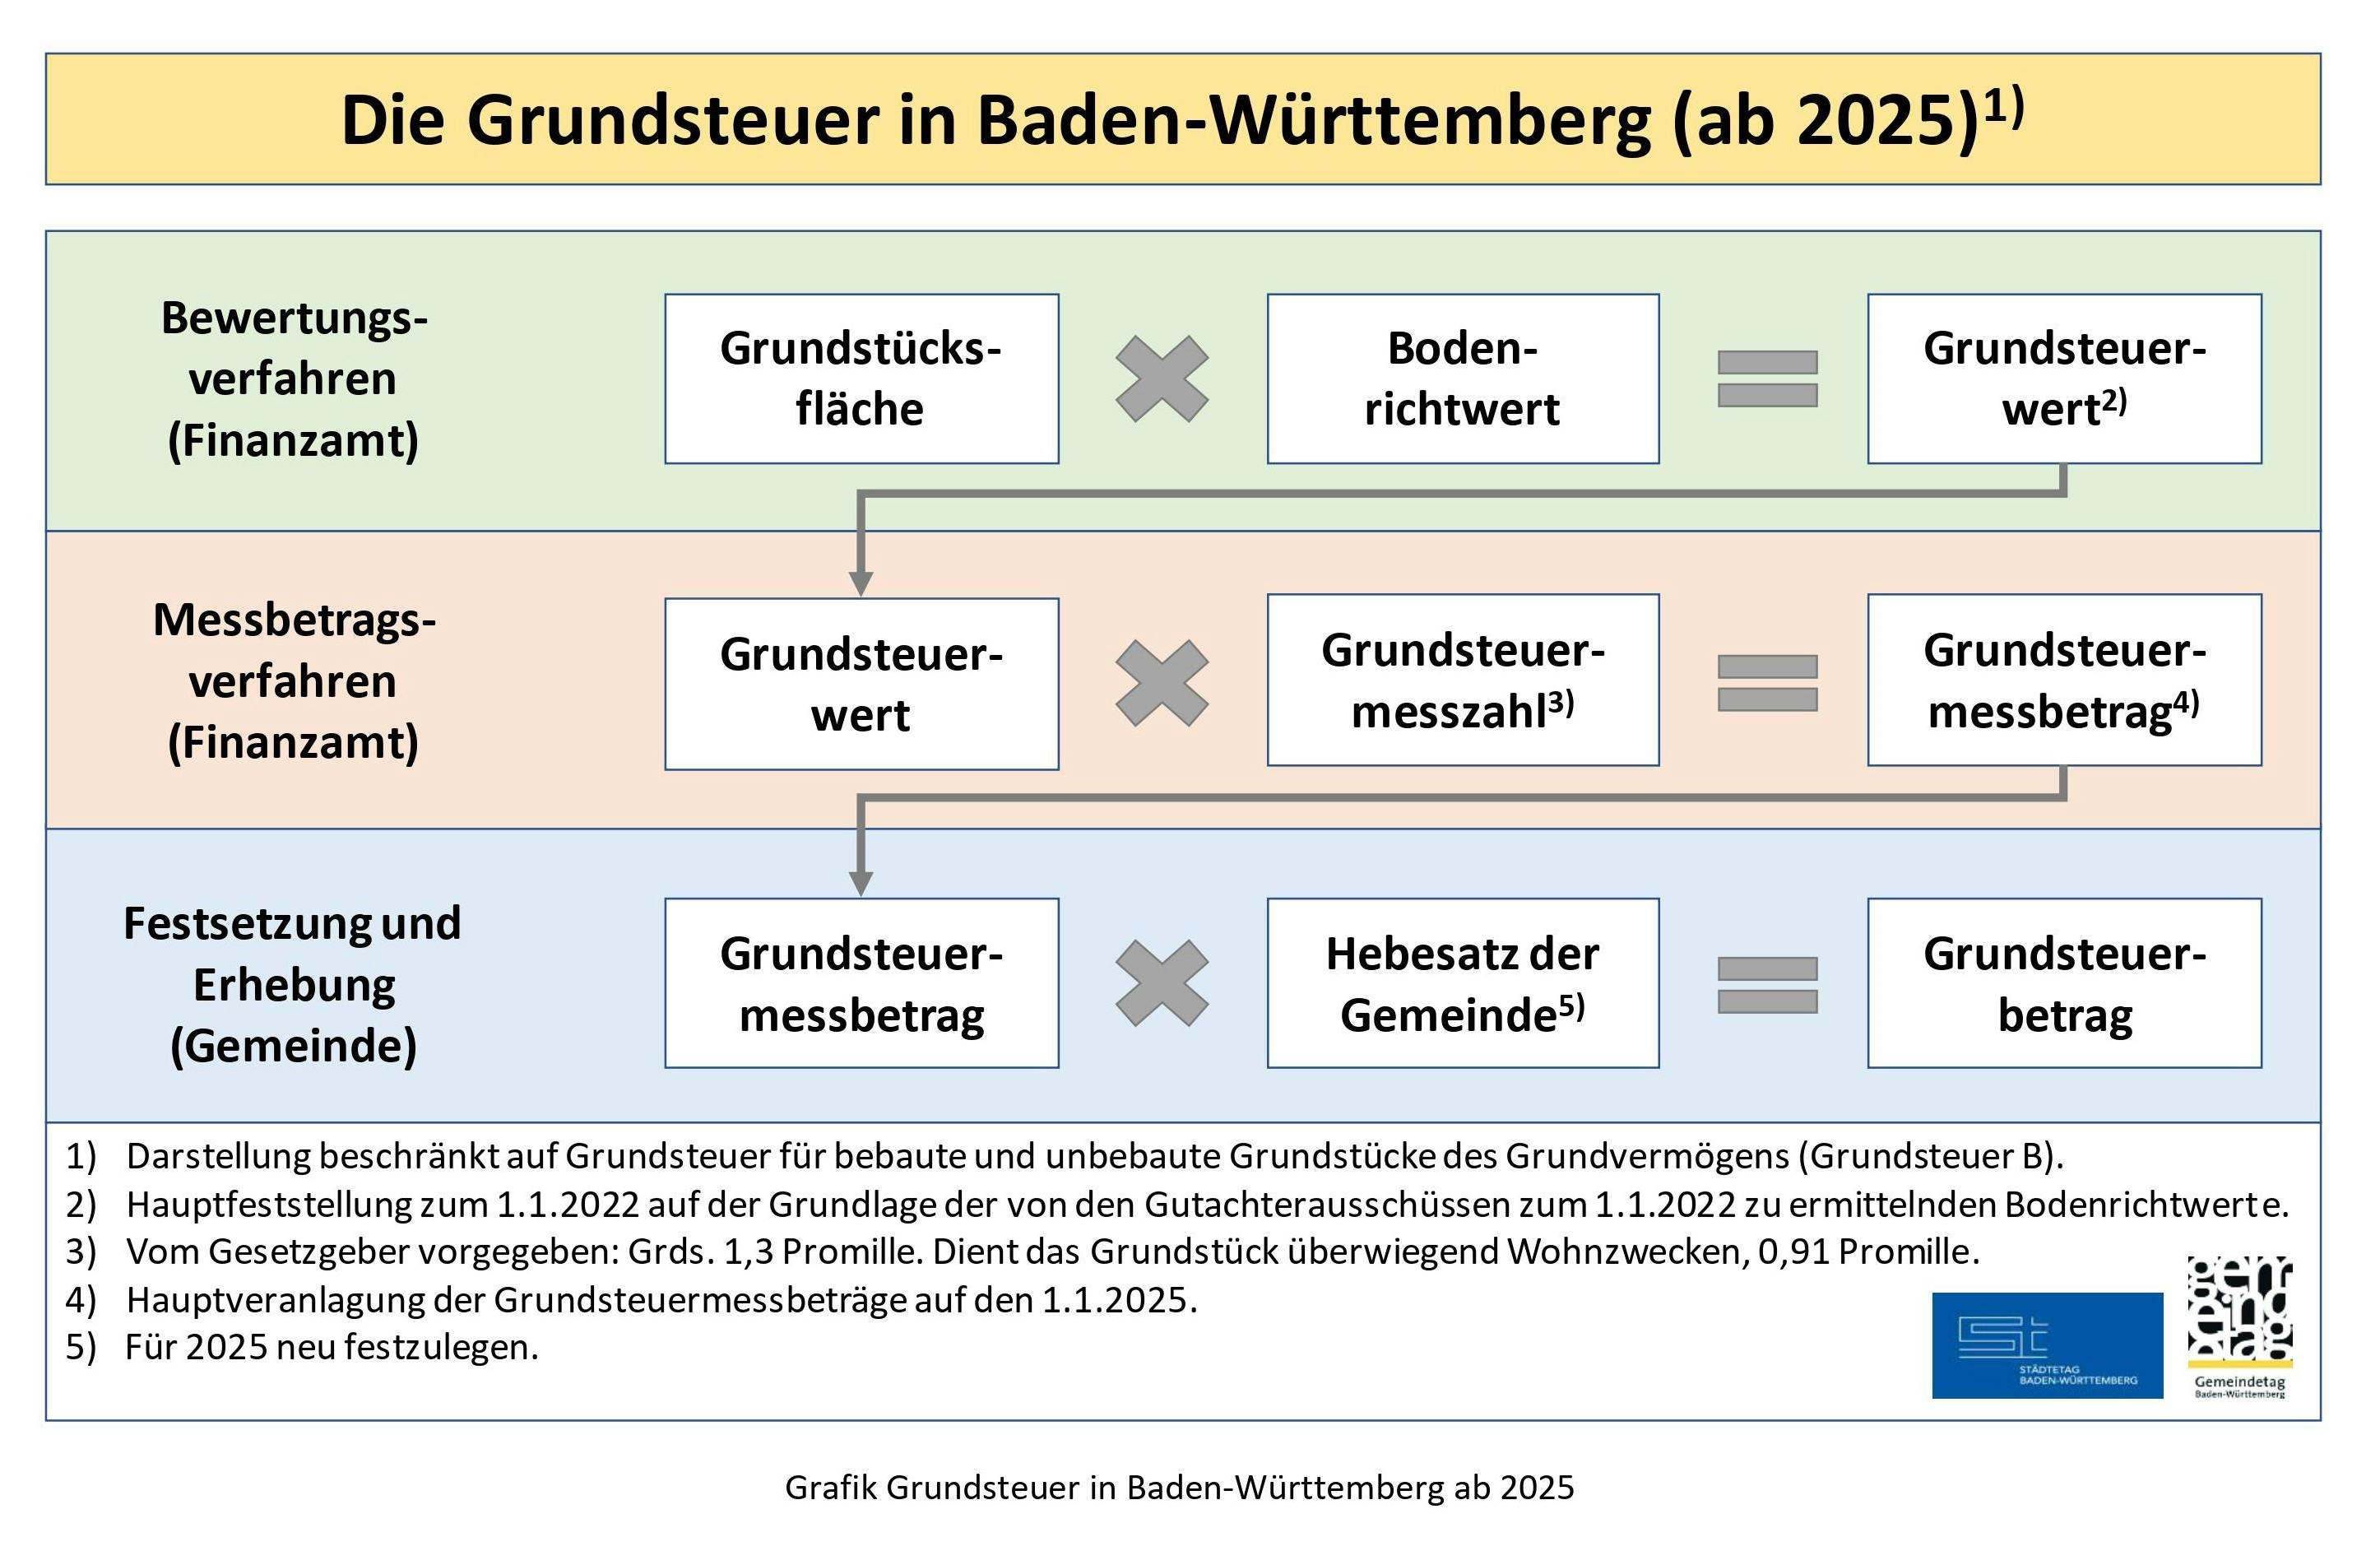 Grafik zur Grundsteuer in Baden-Württemberg ab 2025